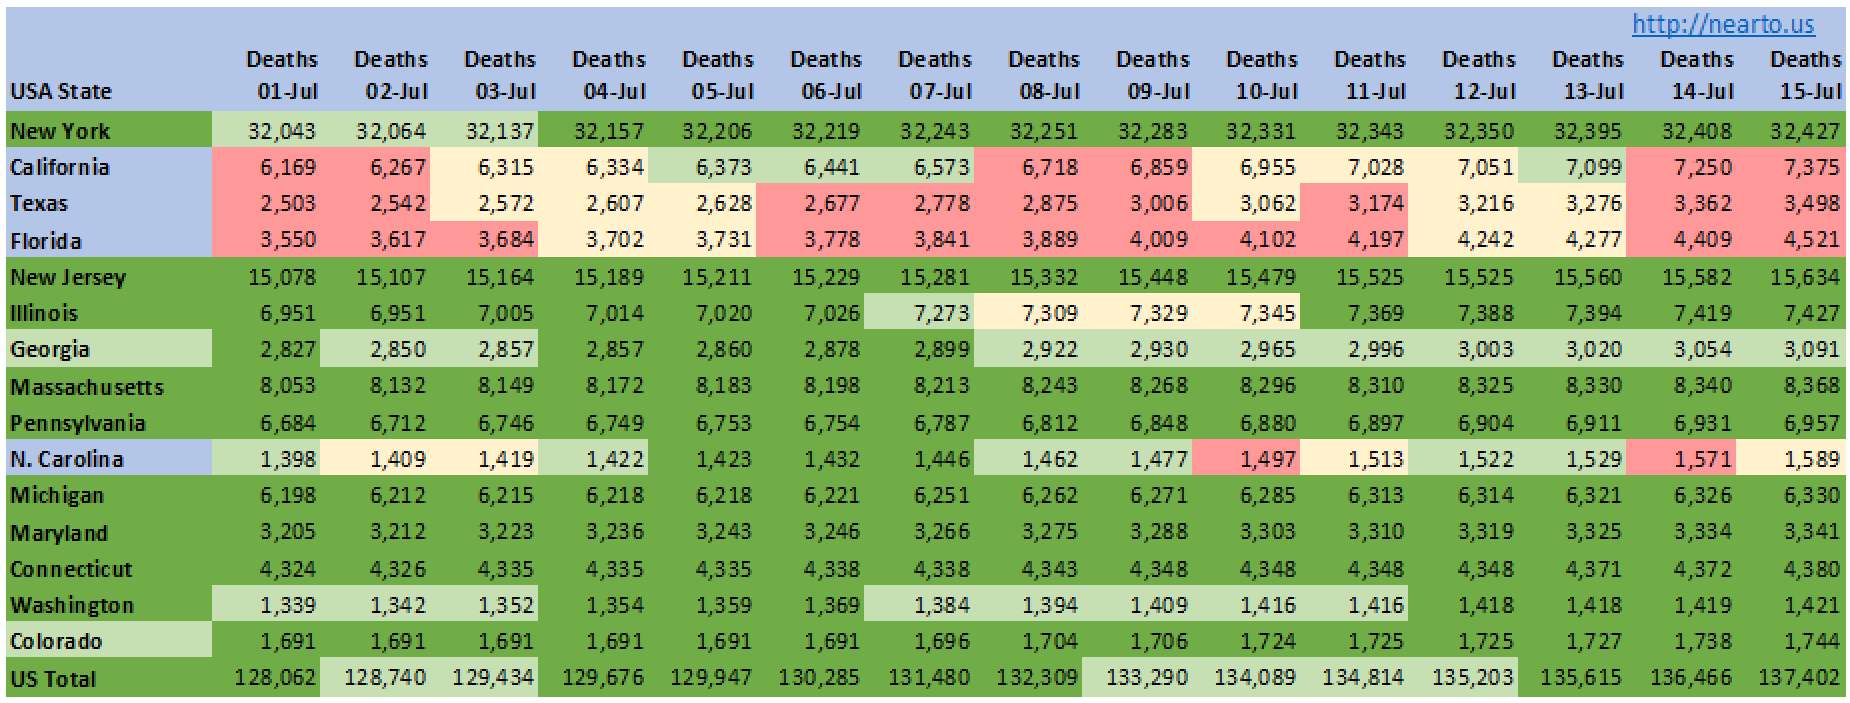 Outcome of death, period 01-Jul-2020 to 15-Jul-2020